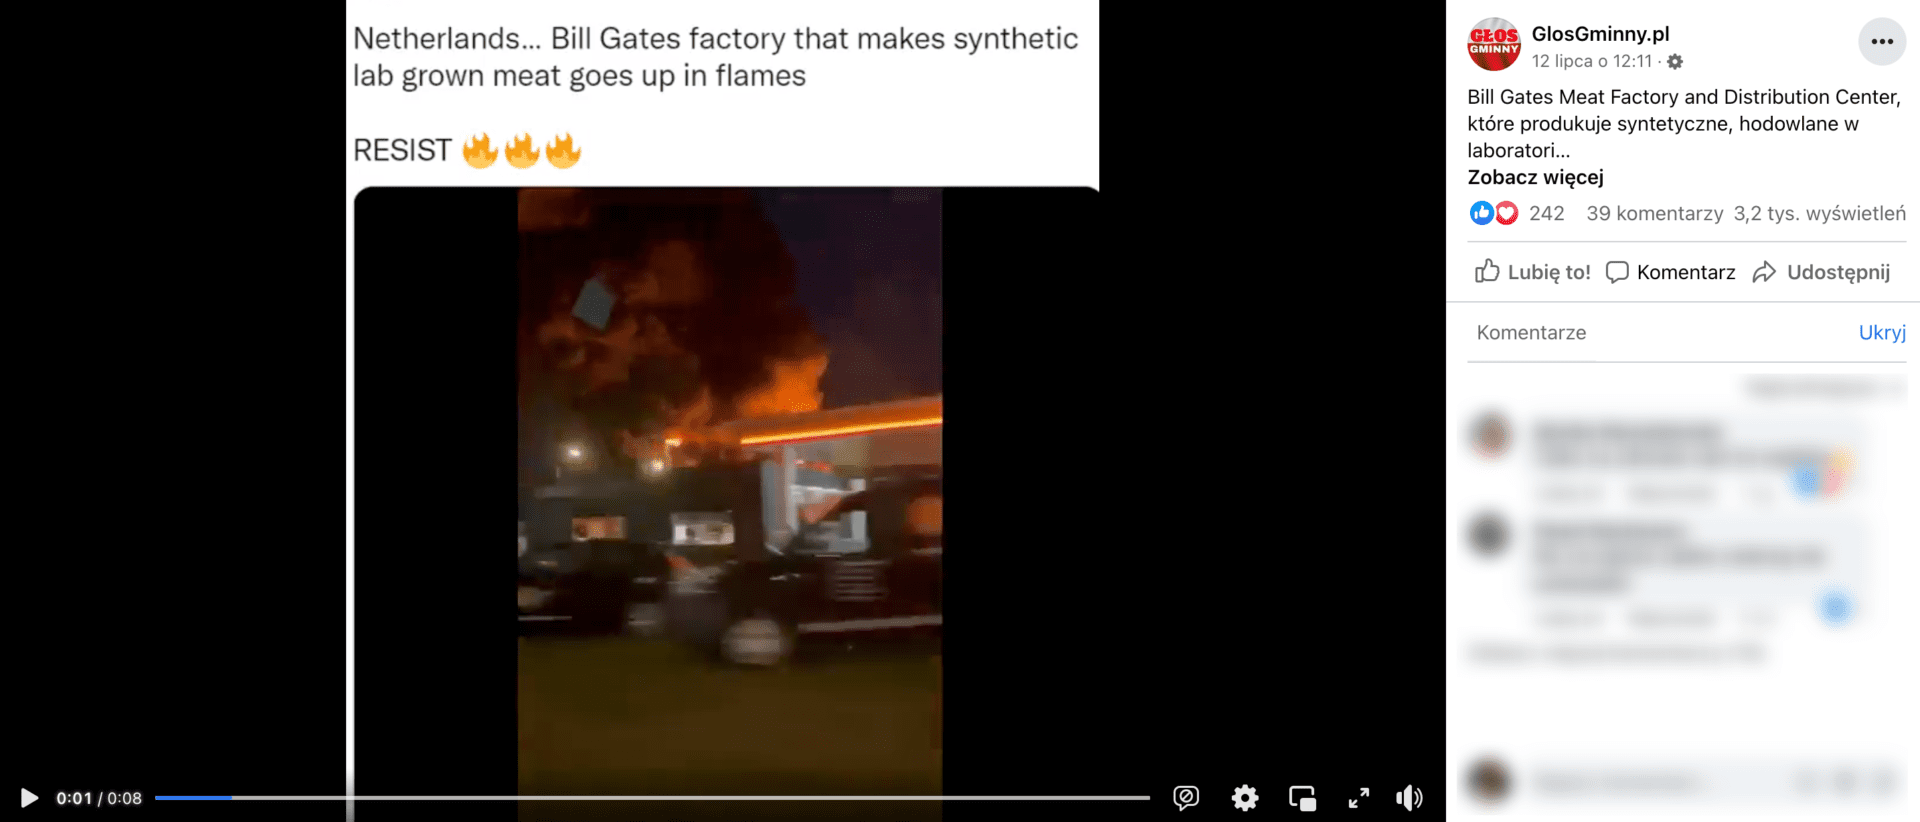 Zrzut ekranu z posta na Facebooku na temat płonącej fabryki. Wpis zdobył ponad 240 reakcji, prawie 40 komentarzy. Wyświetlono go ponad 3,2 tys. razy. 